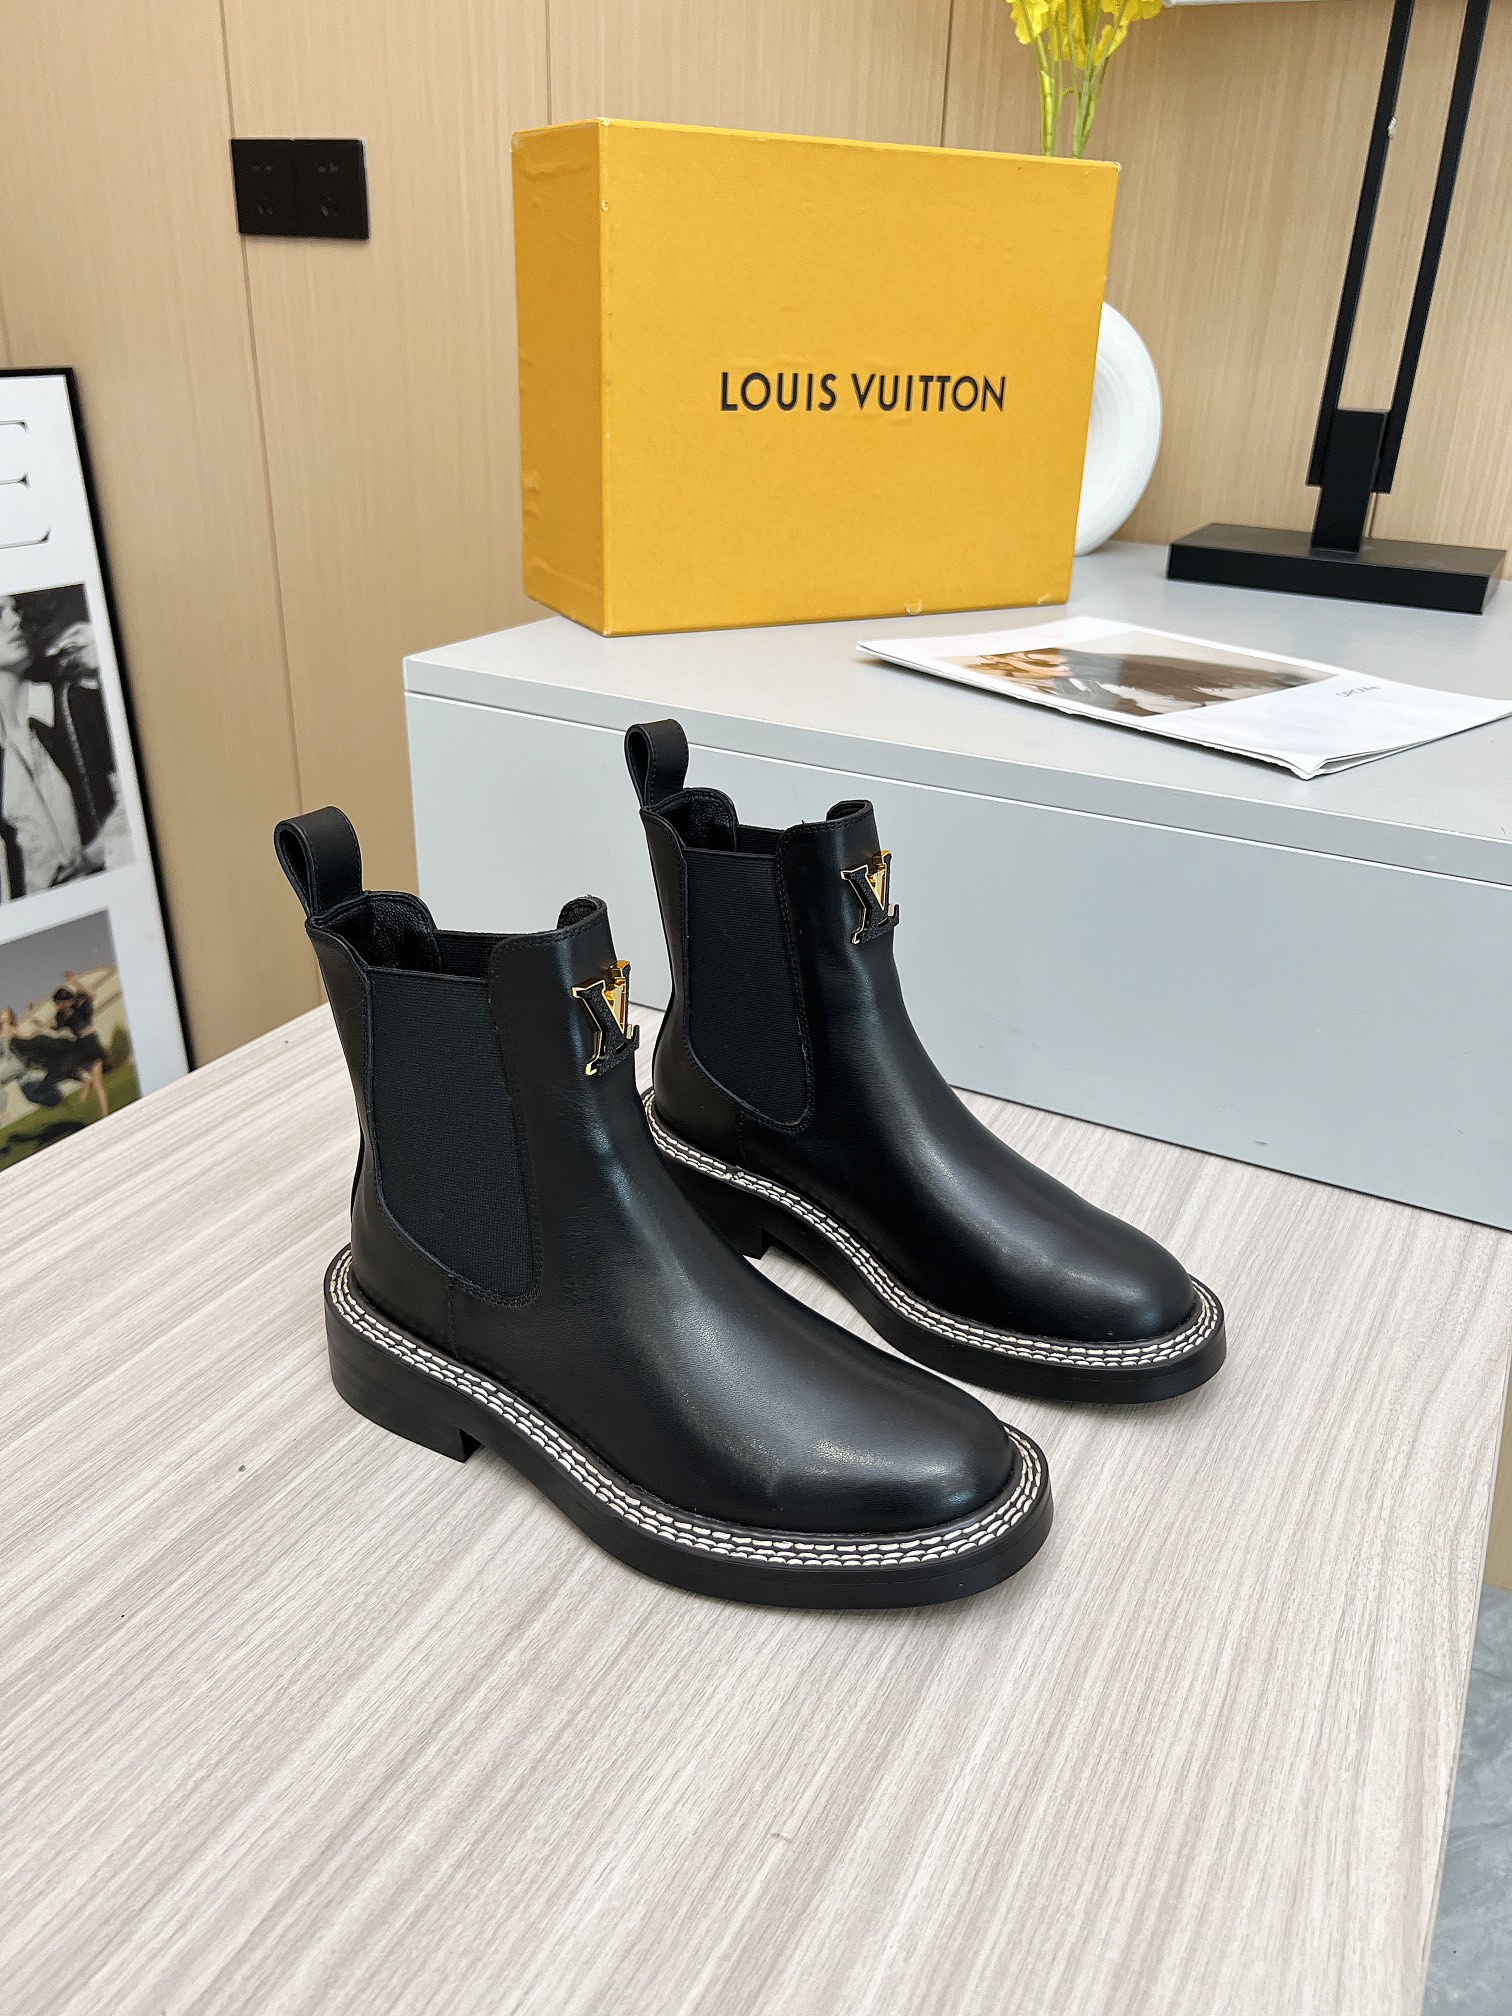 Louis Vuitton Short Boots Women Calfskin Cowhide Sheepskin